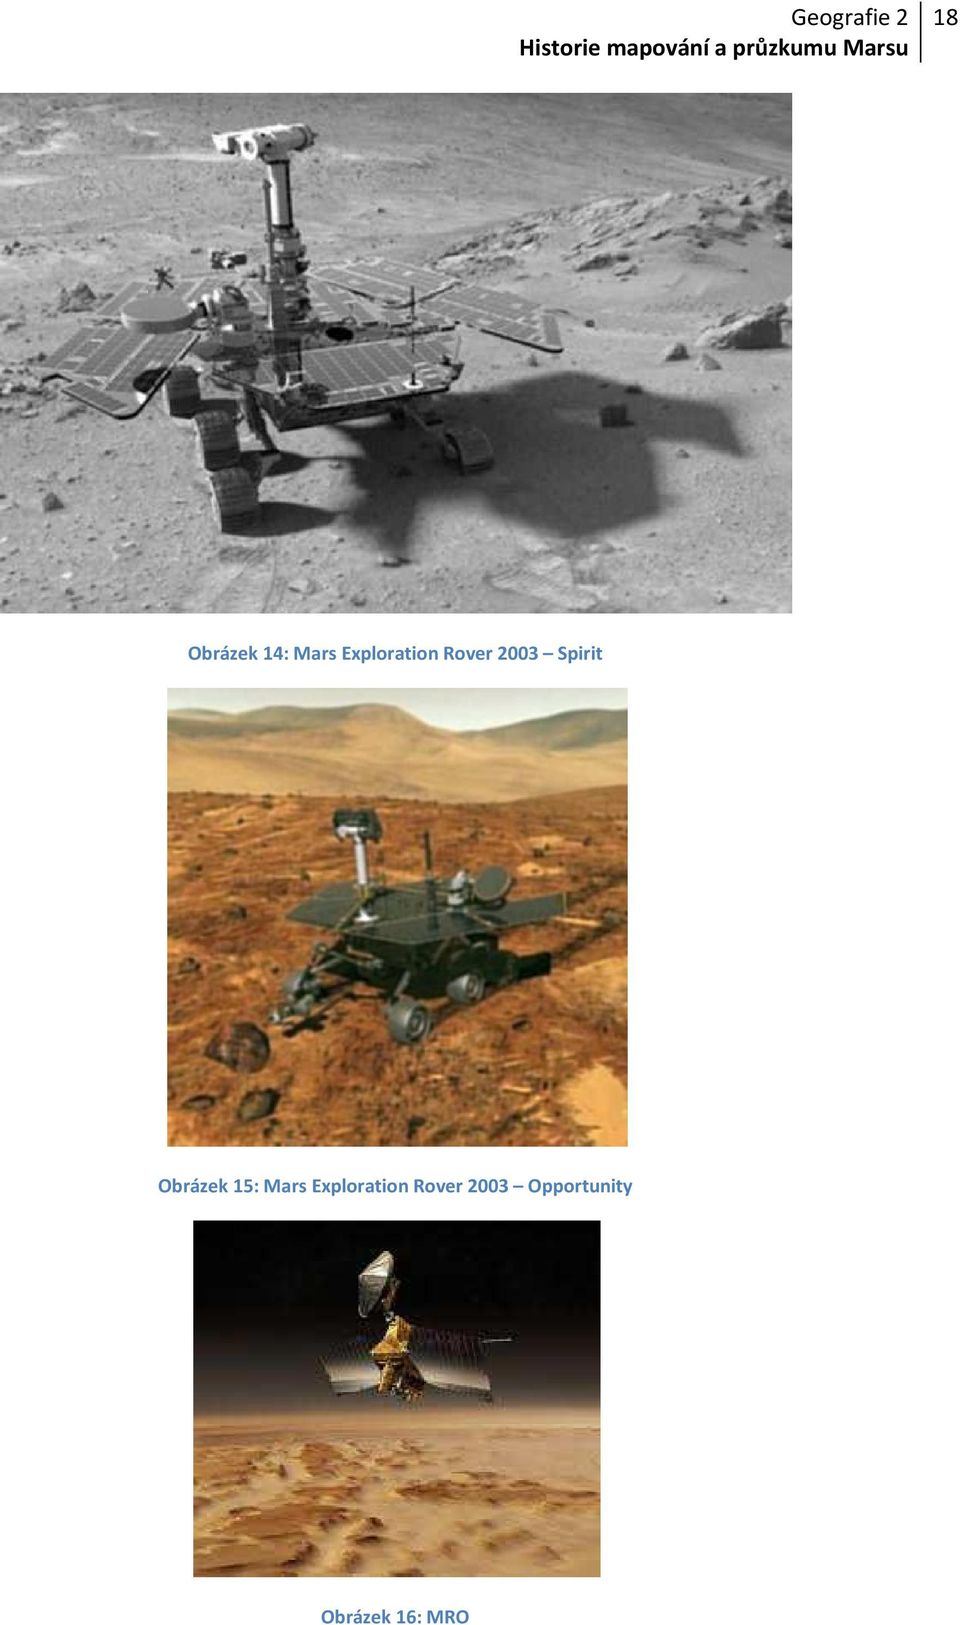 Obrázek 15: Mars Exploration